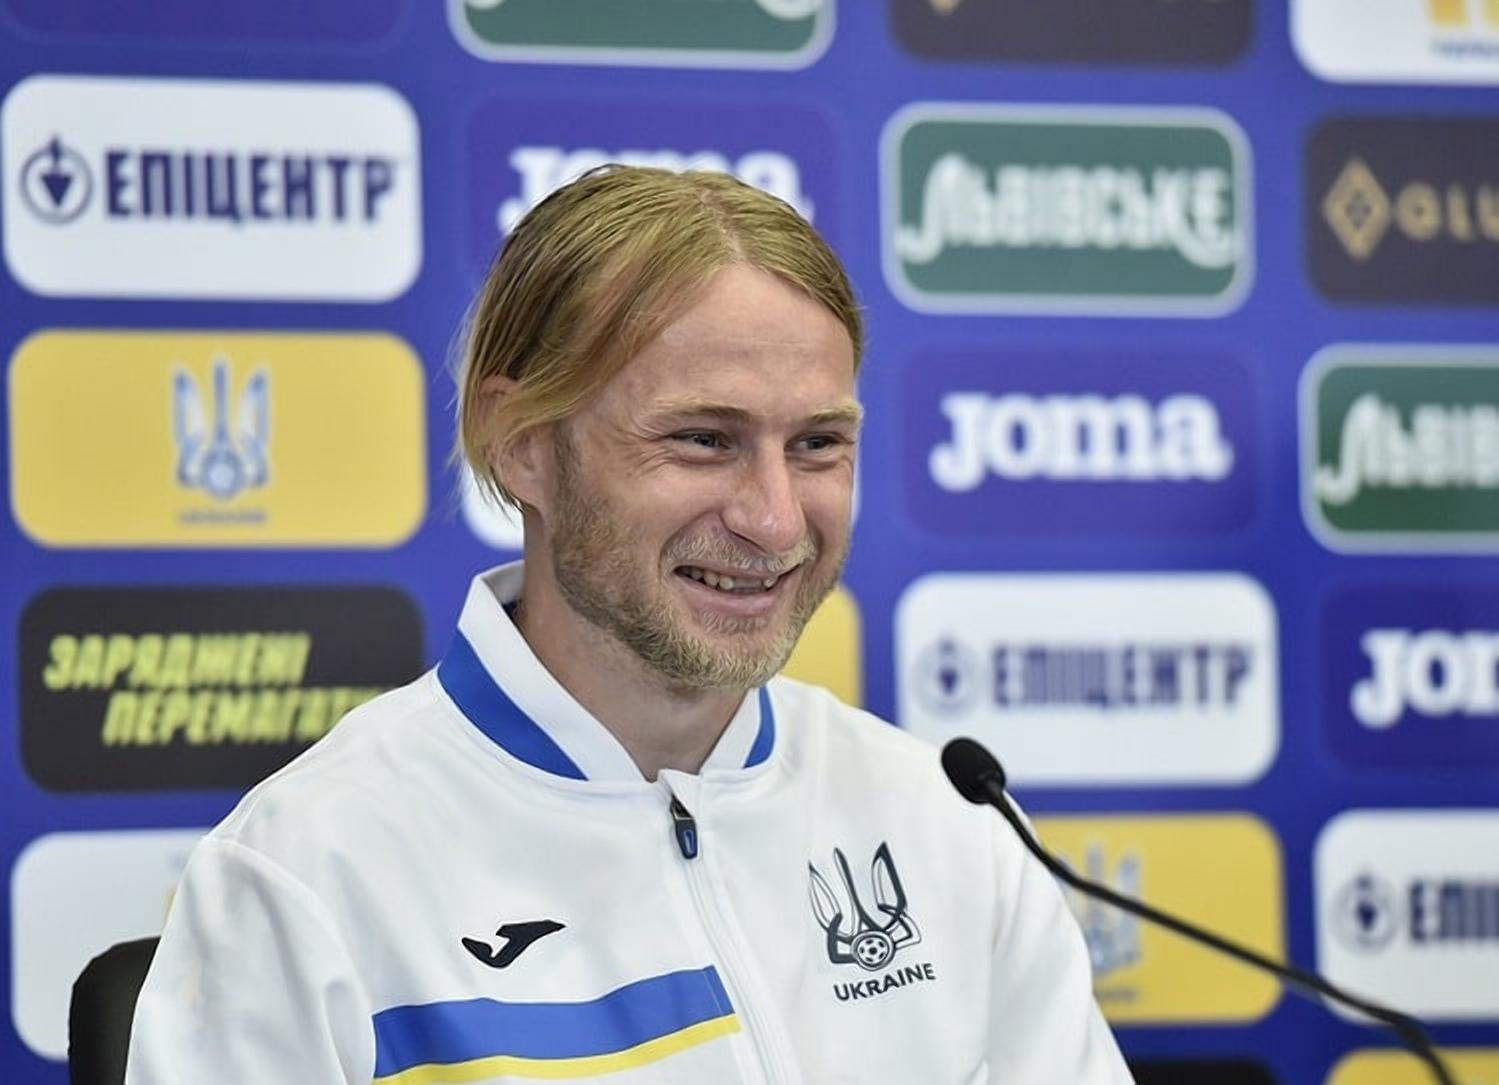 Безус имеет проблемы, – тренер Гента Ванхазебрук очень критически оценивает игру украинца - Сборная